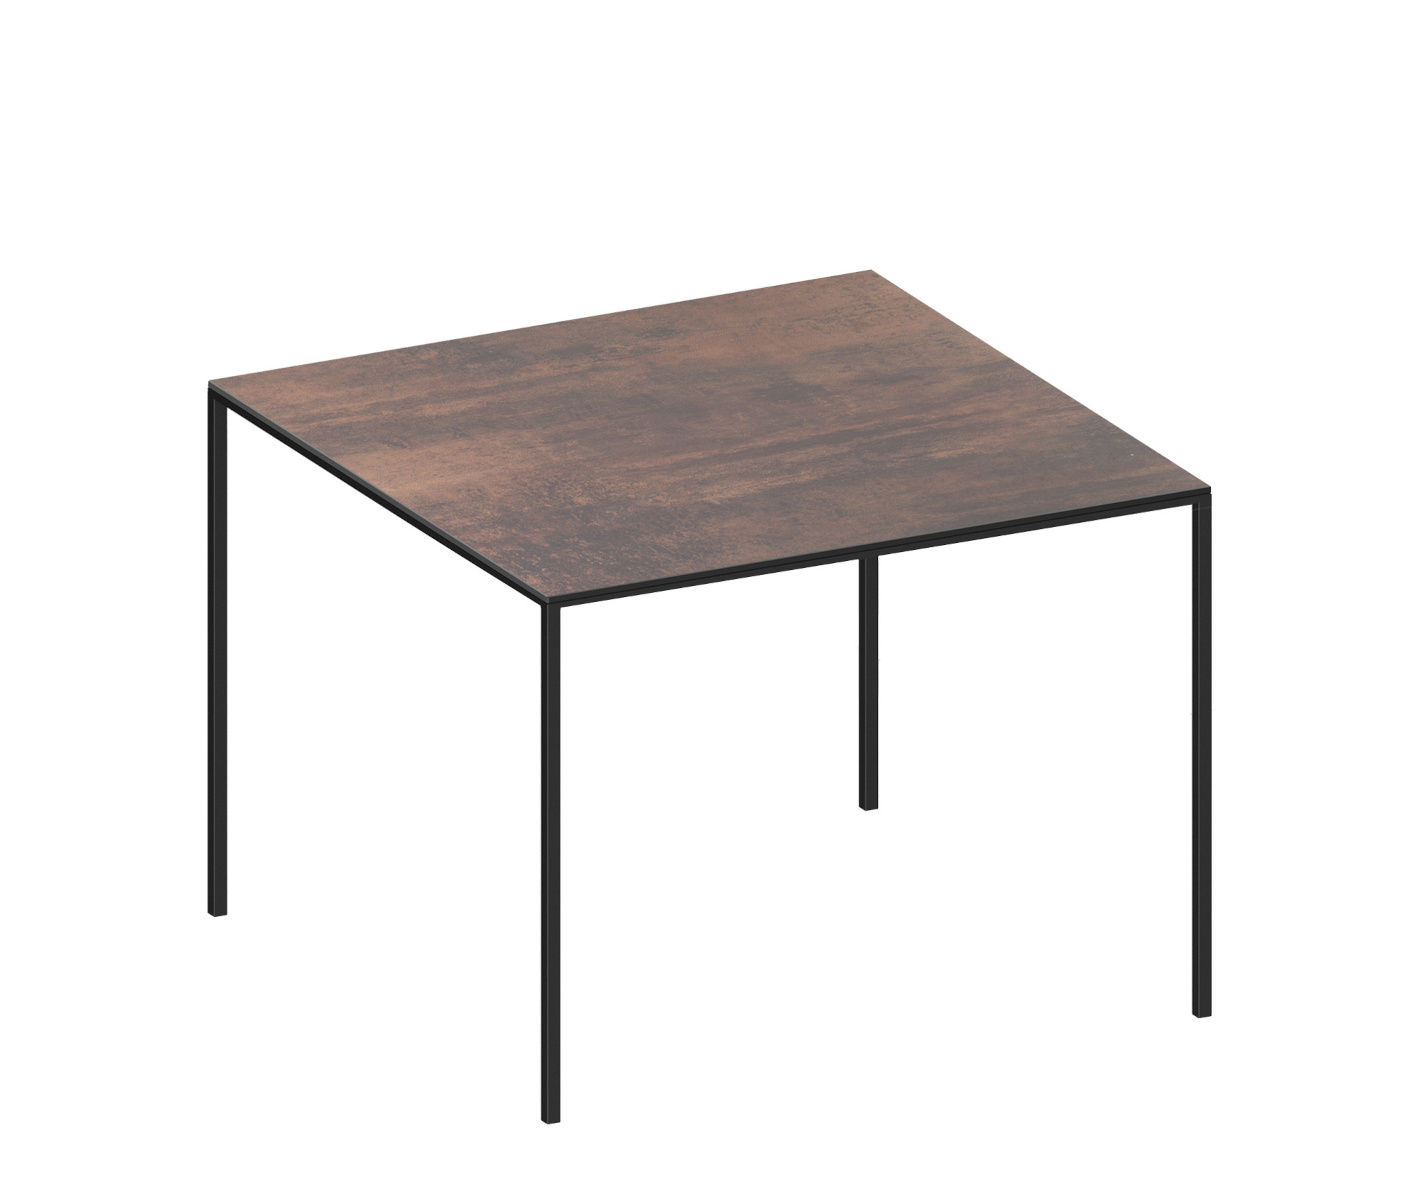 Mini Tavolo Wood Tisch, 99 x 99 cm, schwarz / eiche